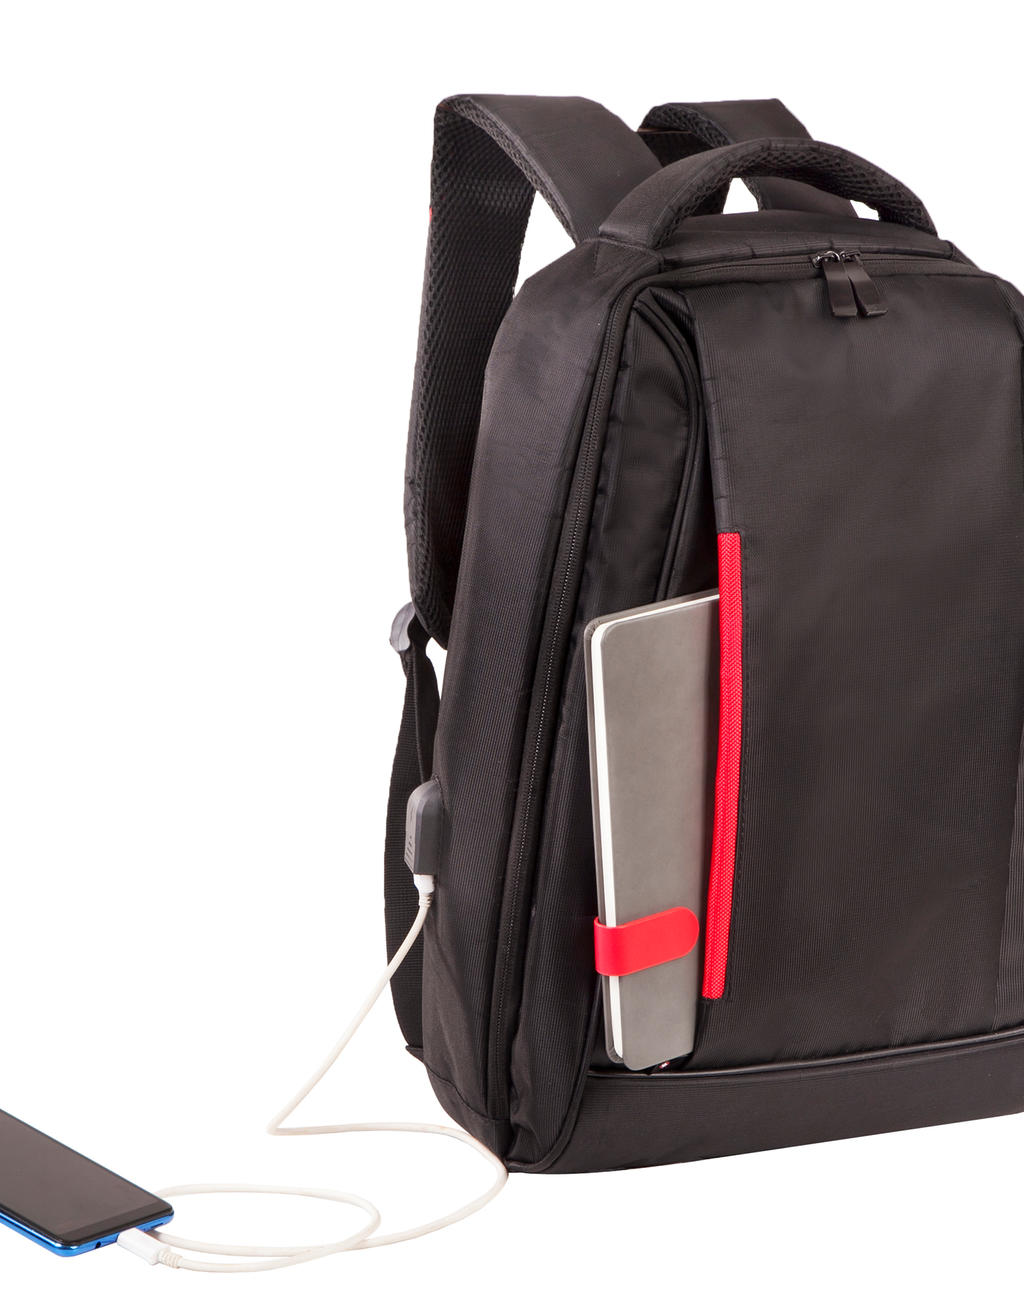  Kiel Urban Laptop Backpack in Farbe Black/Red